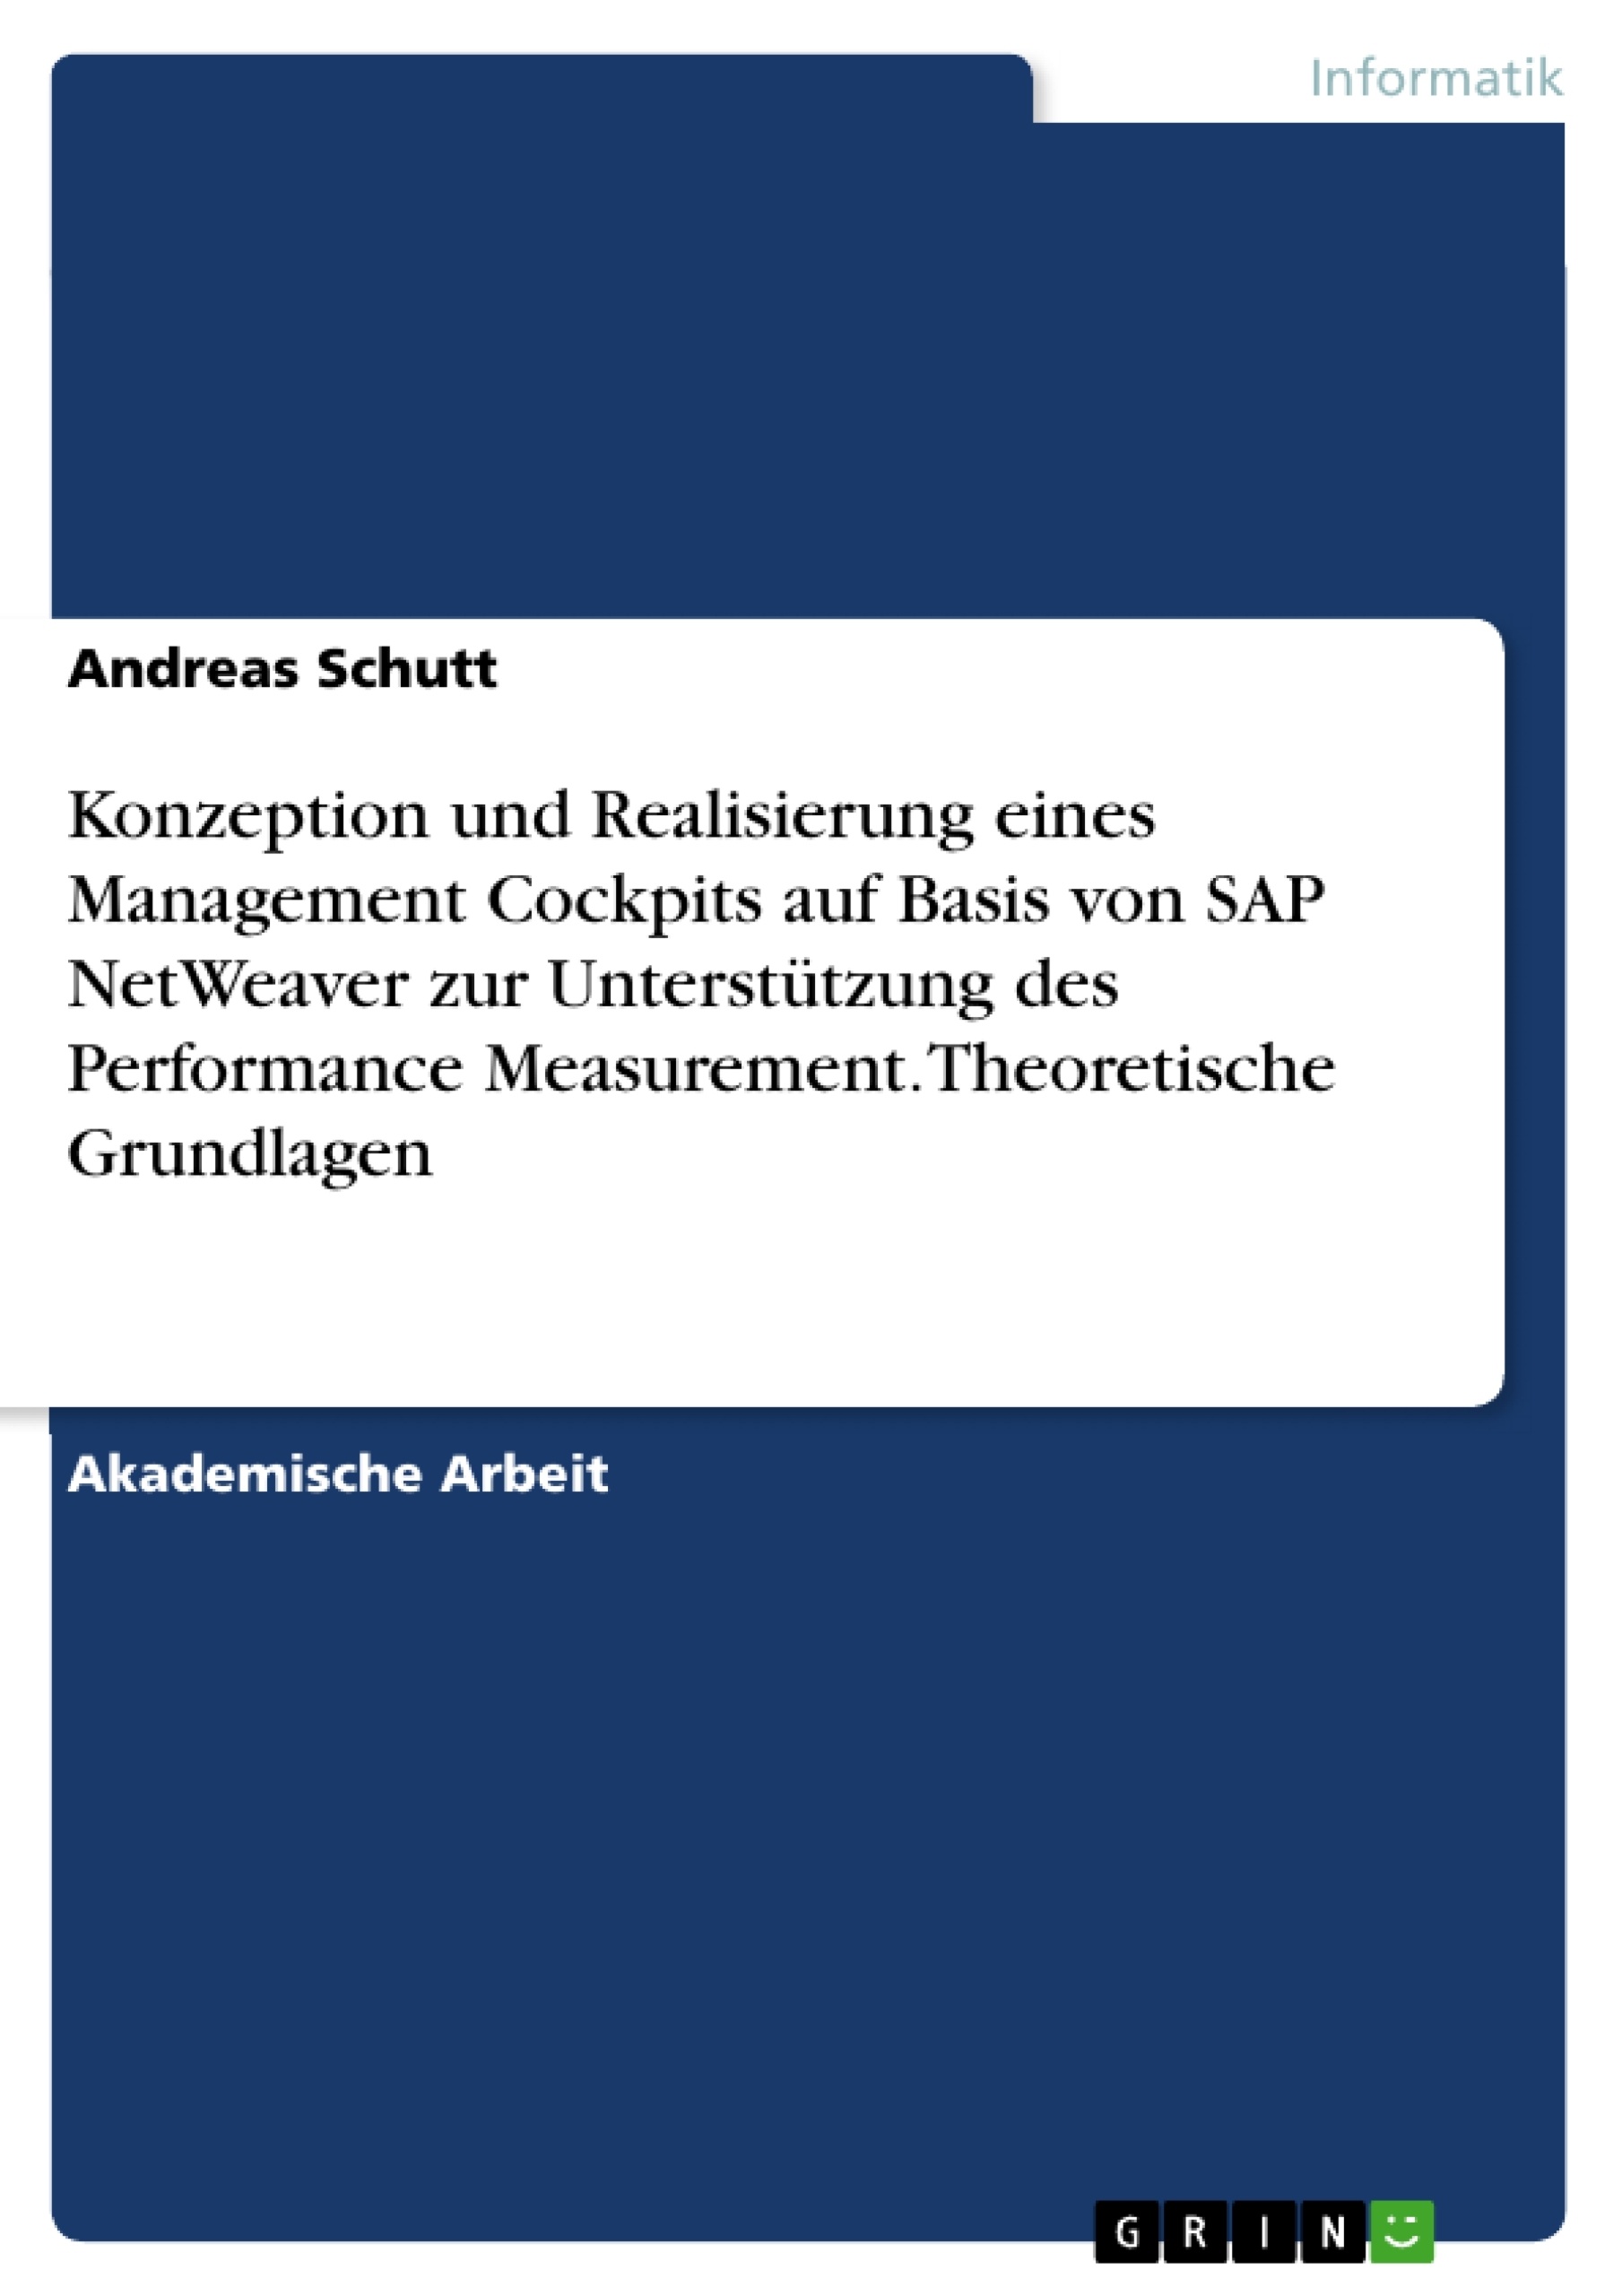 Titre: Konzeption und Realisierung eines
Management Cockpits
auf Basis von SAP NetWeaver
zur Unterstützung des Performance Measurement. Theoretische Grundlagen